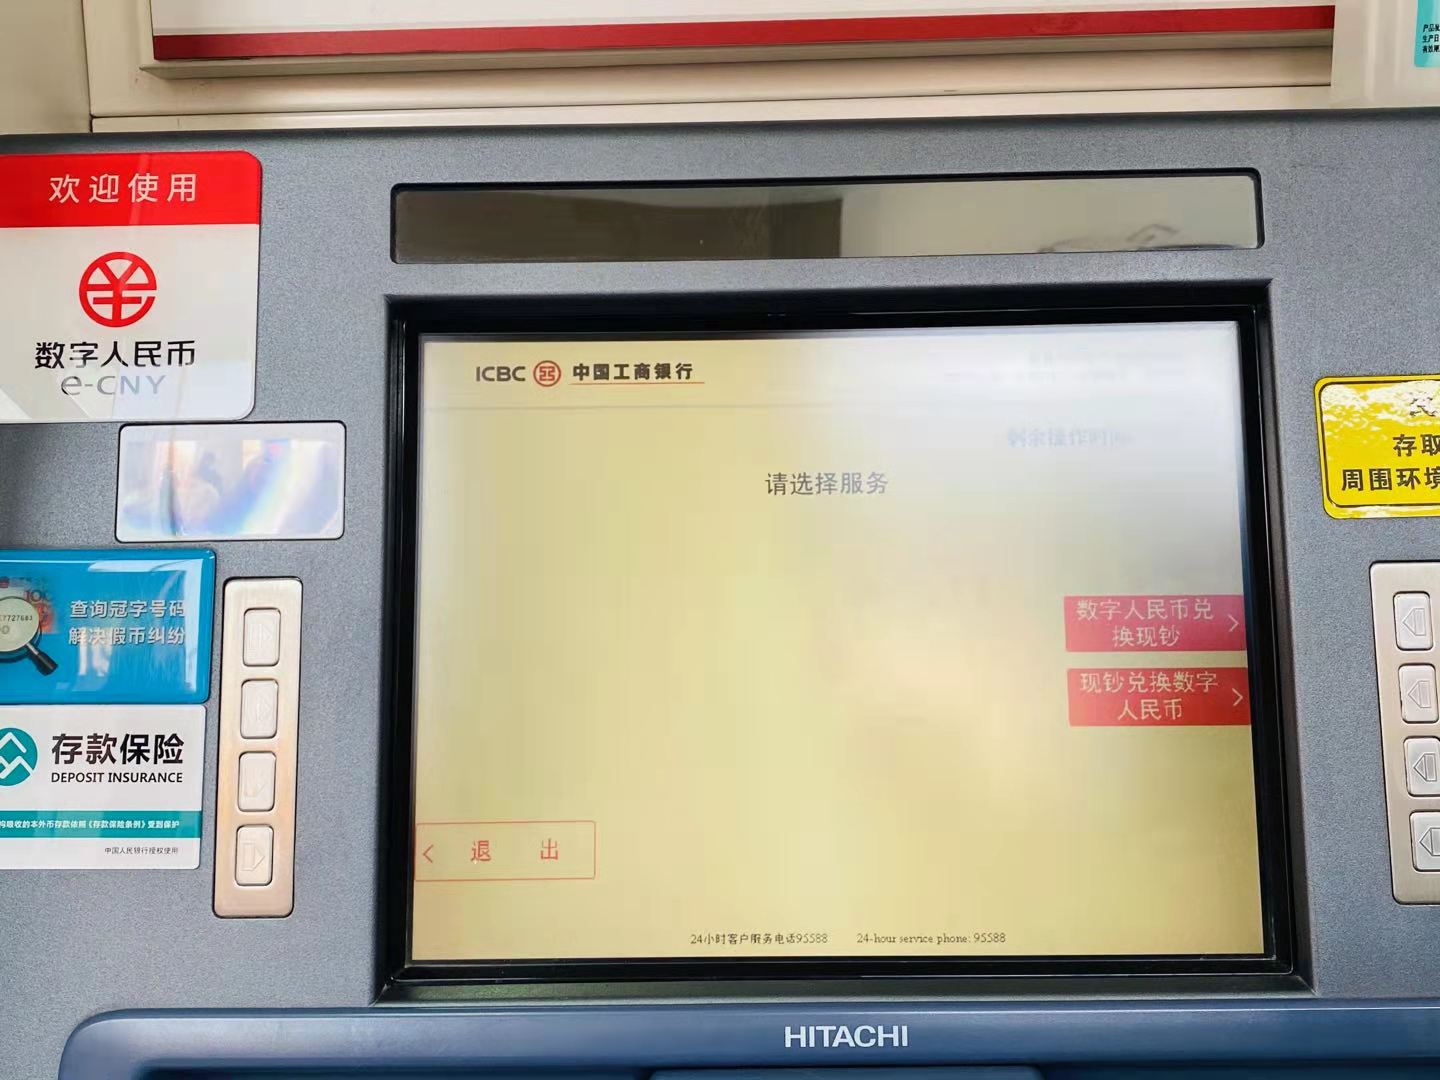 可以从 ATM 机提取数字人民币。记者如何打开数字钱包实现相互兑换？